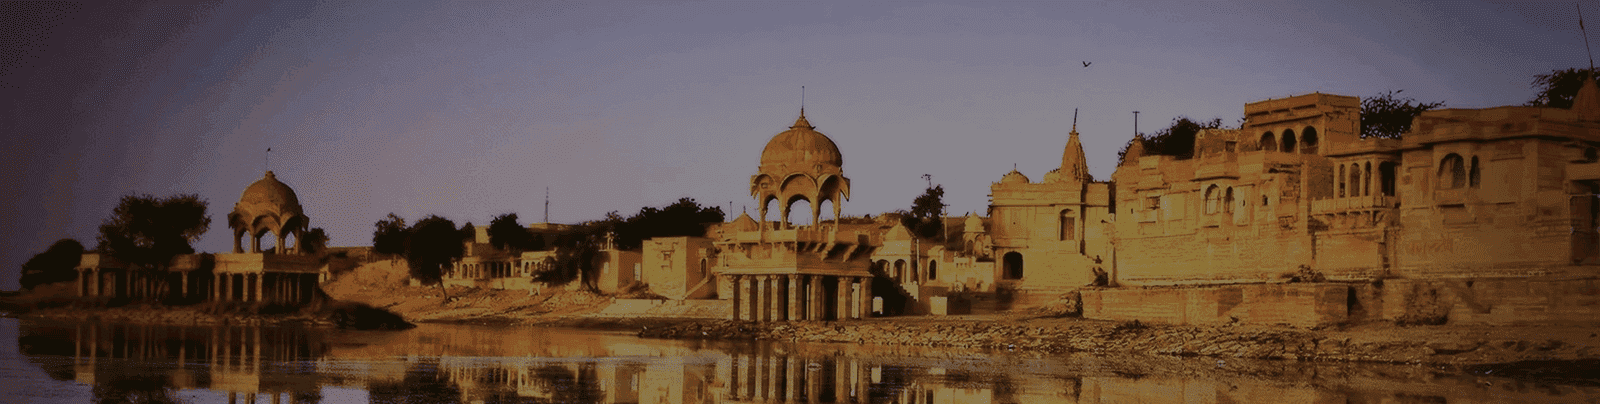 Jaipur Bikaner Jaisalmer